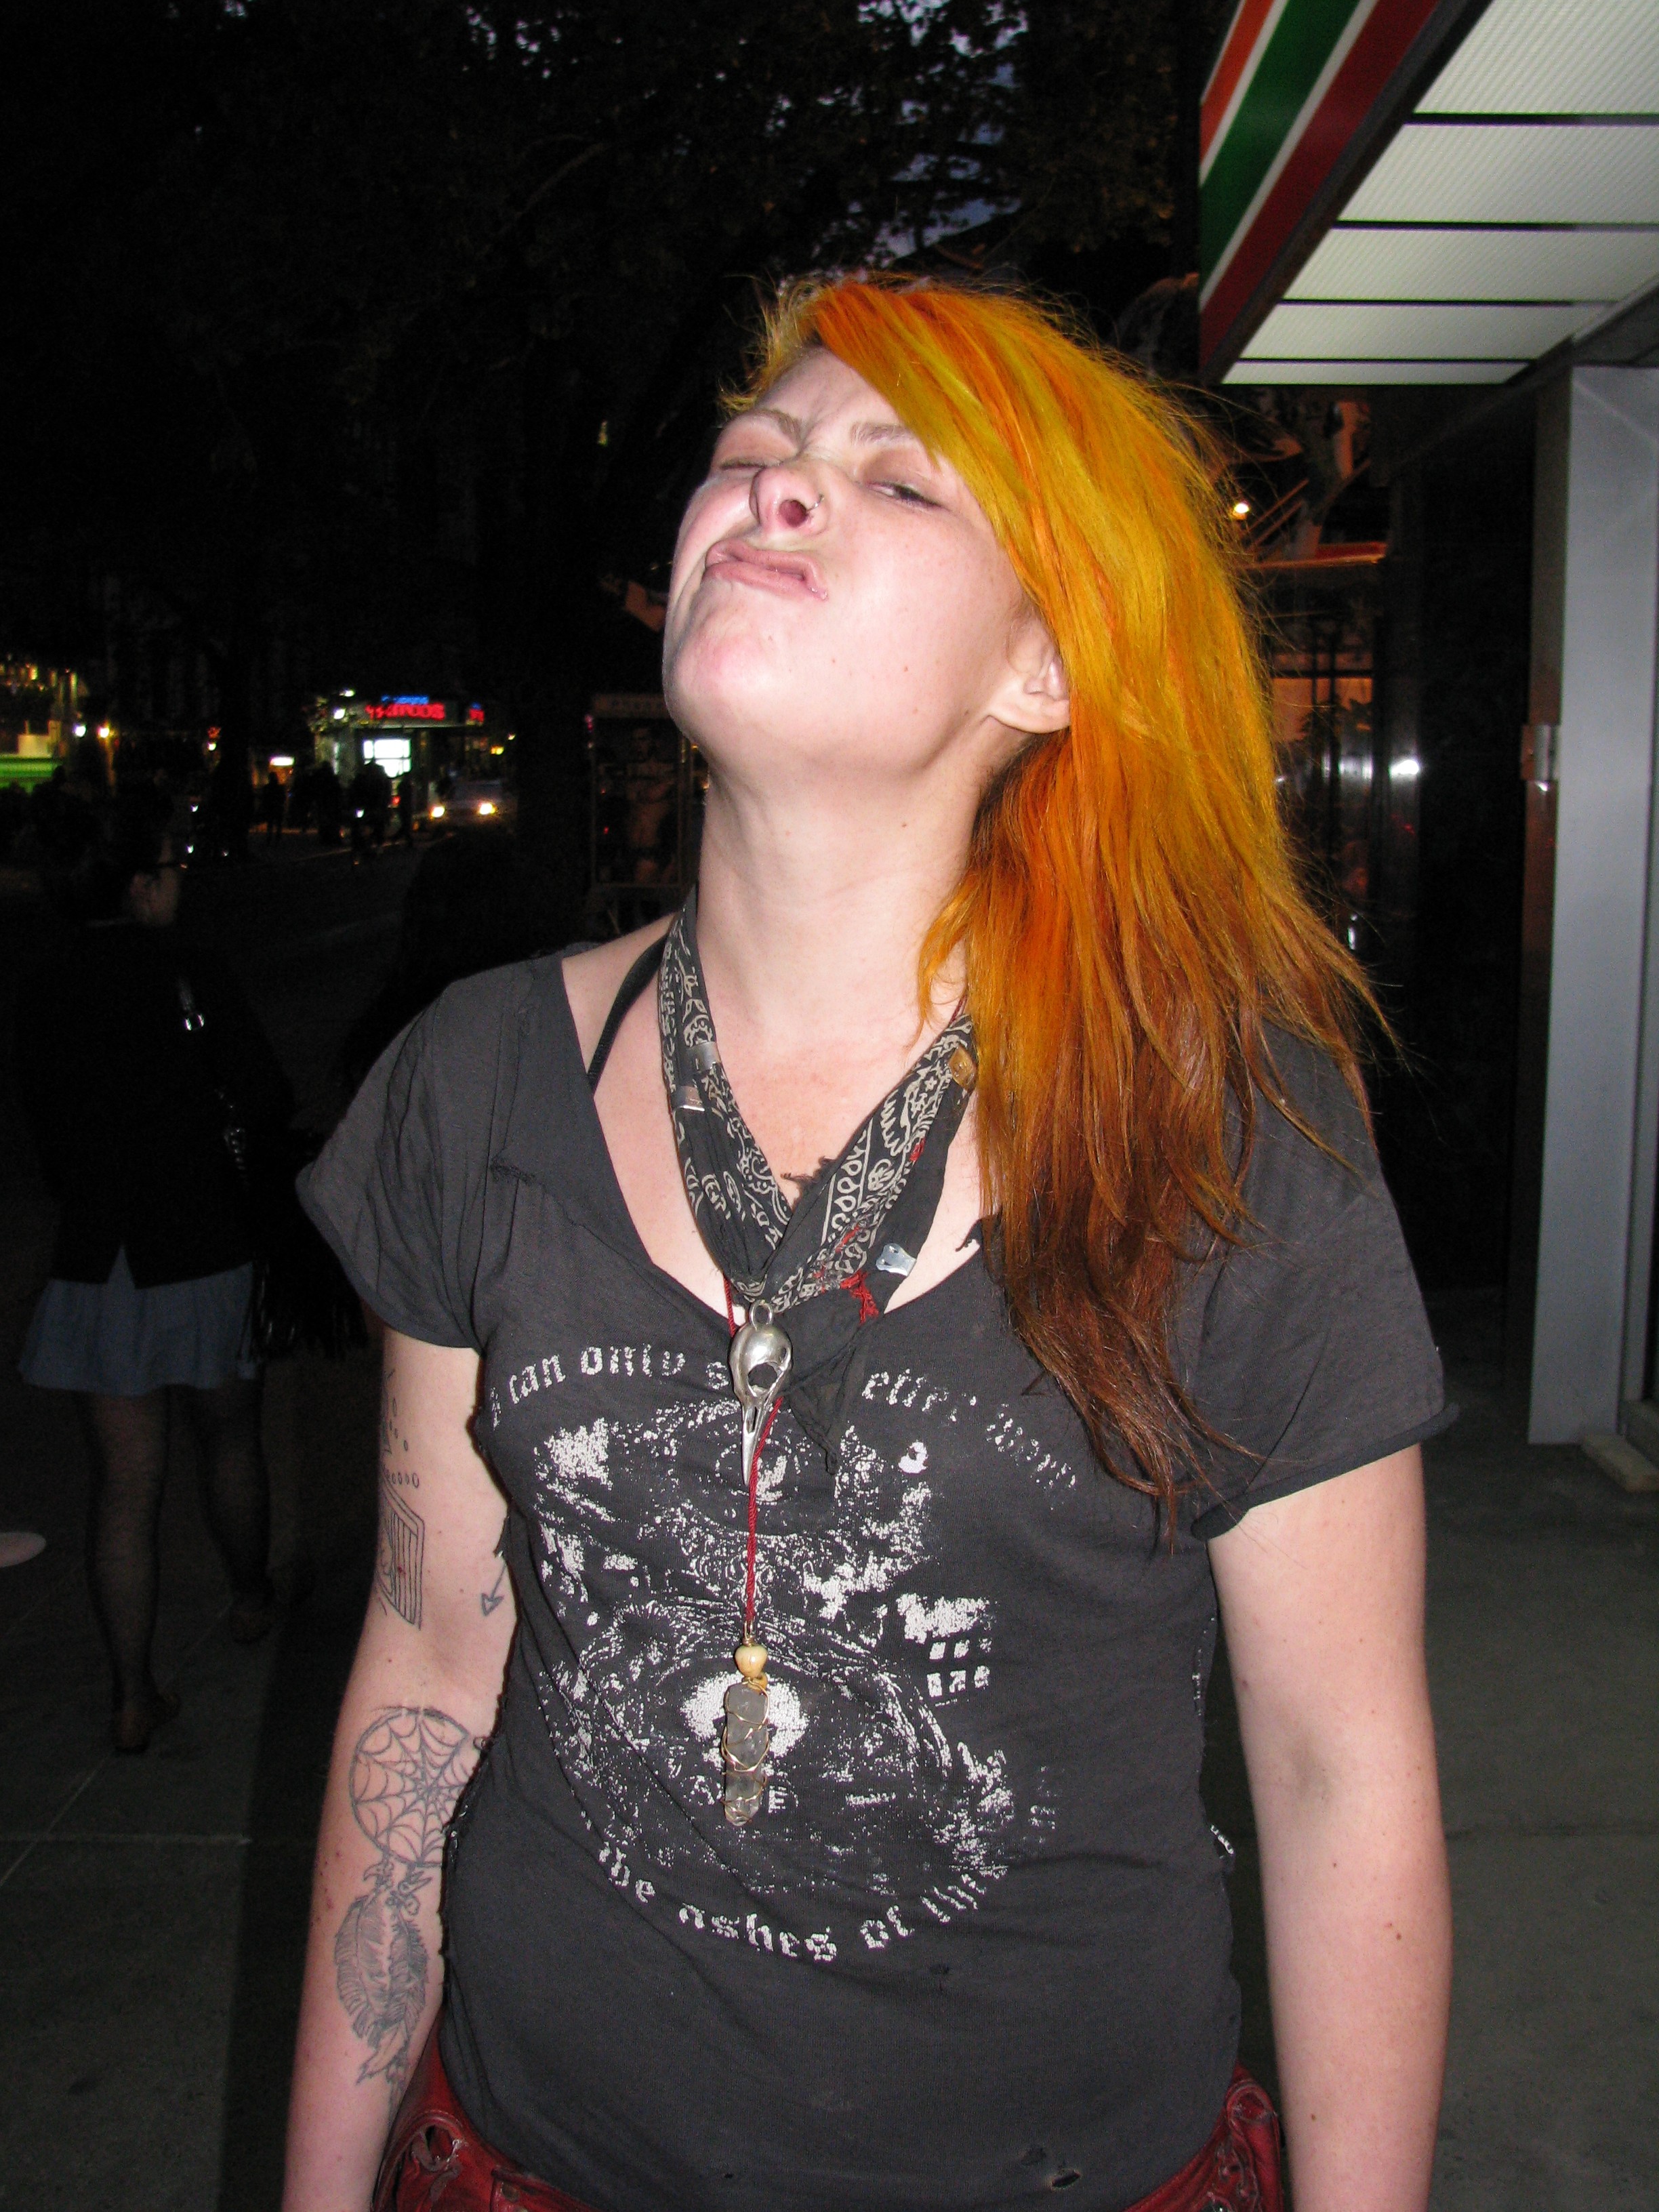 punk rock girl with orange hair looking tough